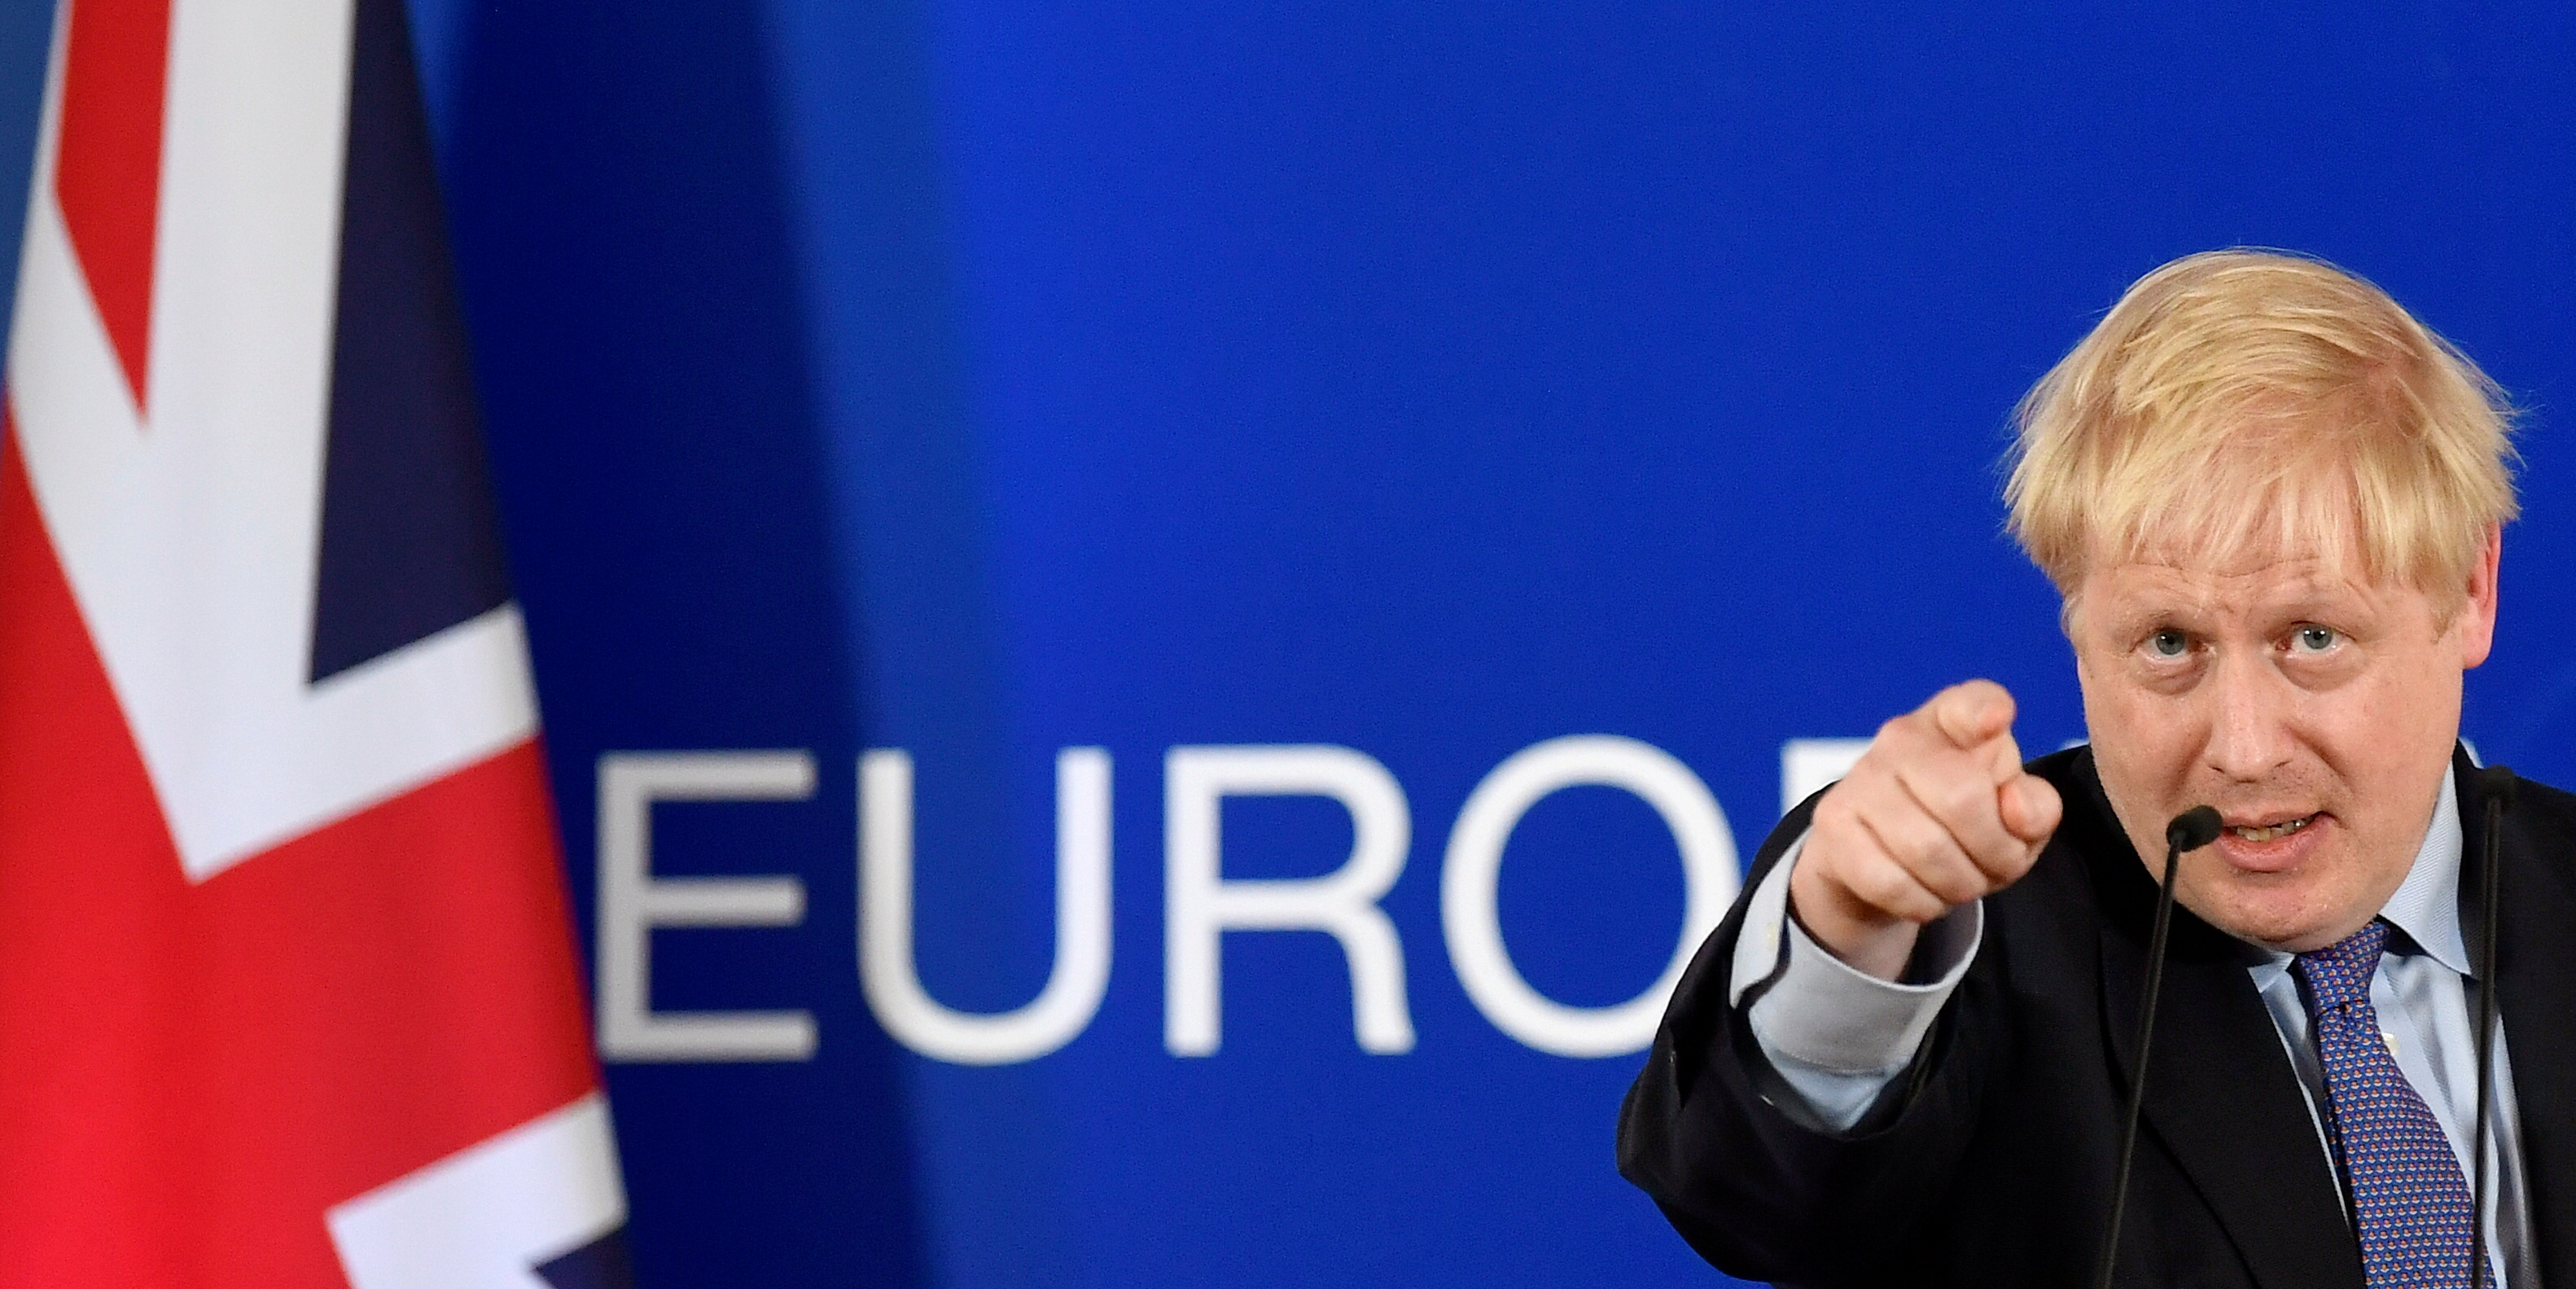 https://img5.s3wfg.com/web/img/images_uploaded/4/4/boris-johnson-premier-ministre-britannique-lors-du-sommet-des-leaders-de-l-union-europeenne-le-17-octobre-2019-a-bruxelles.png